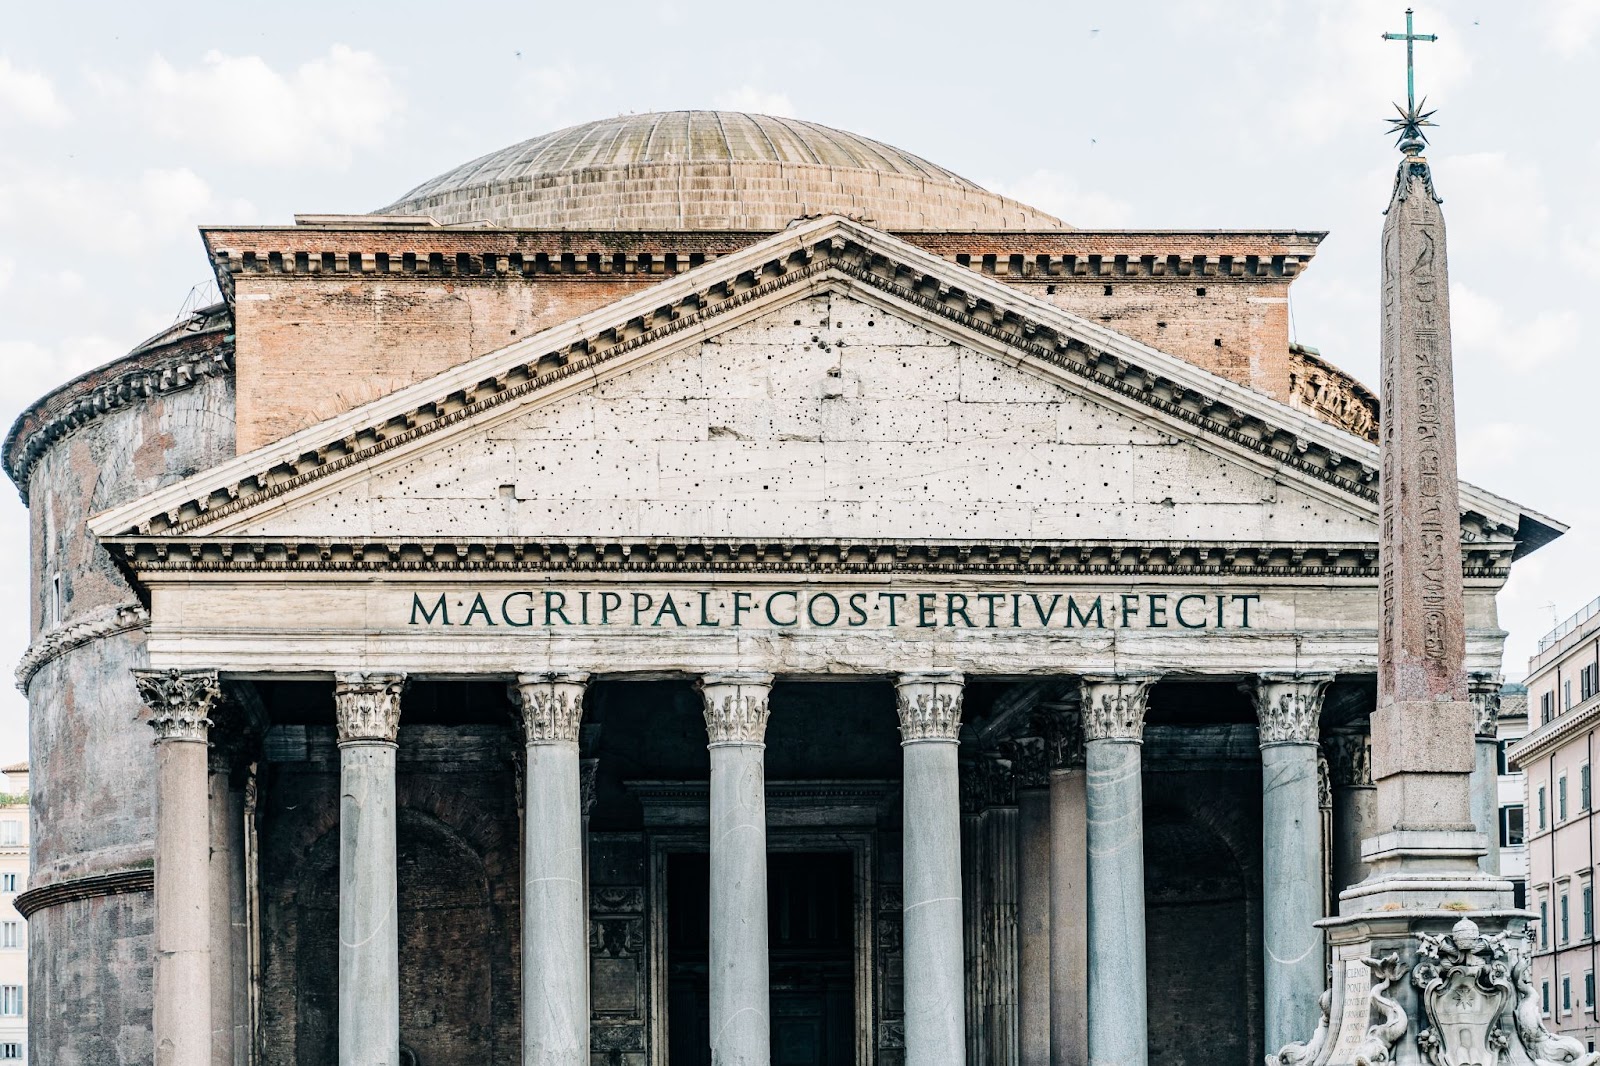 Emperor Hadrian's Pantheon